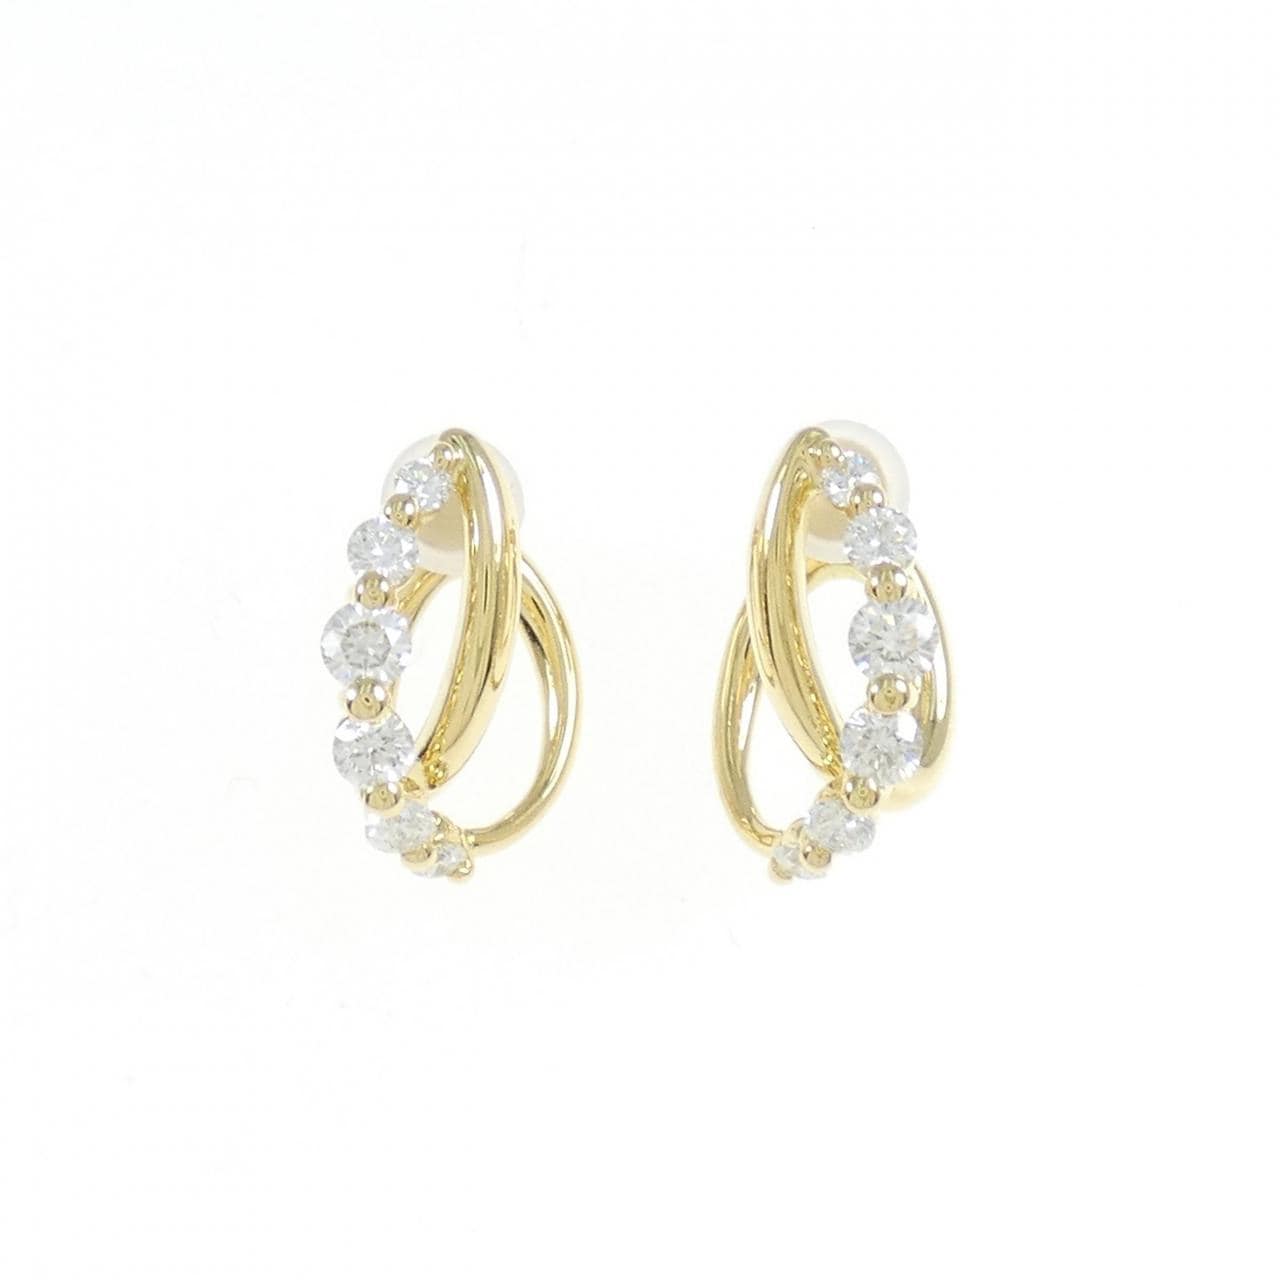 K18YG Diamond earrings 0.80CT